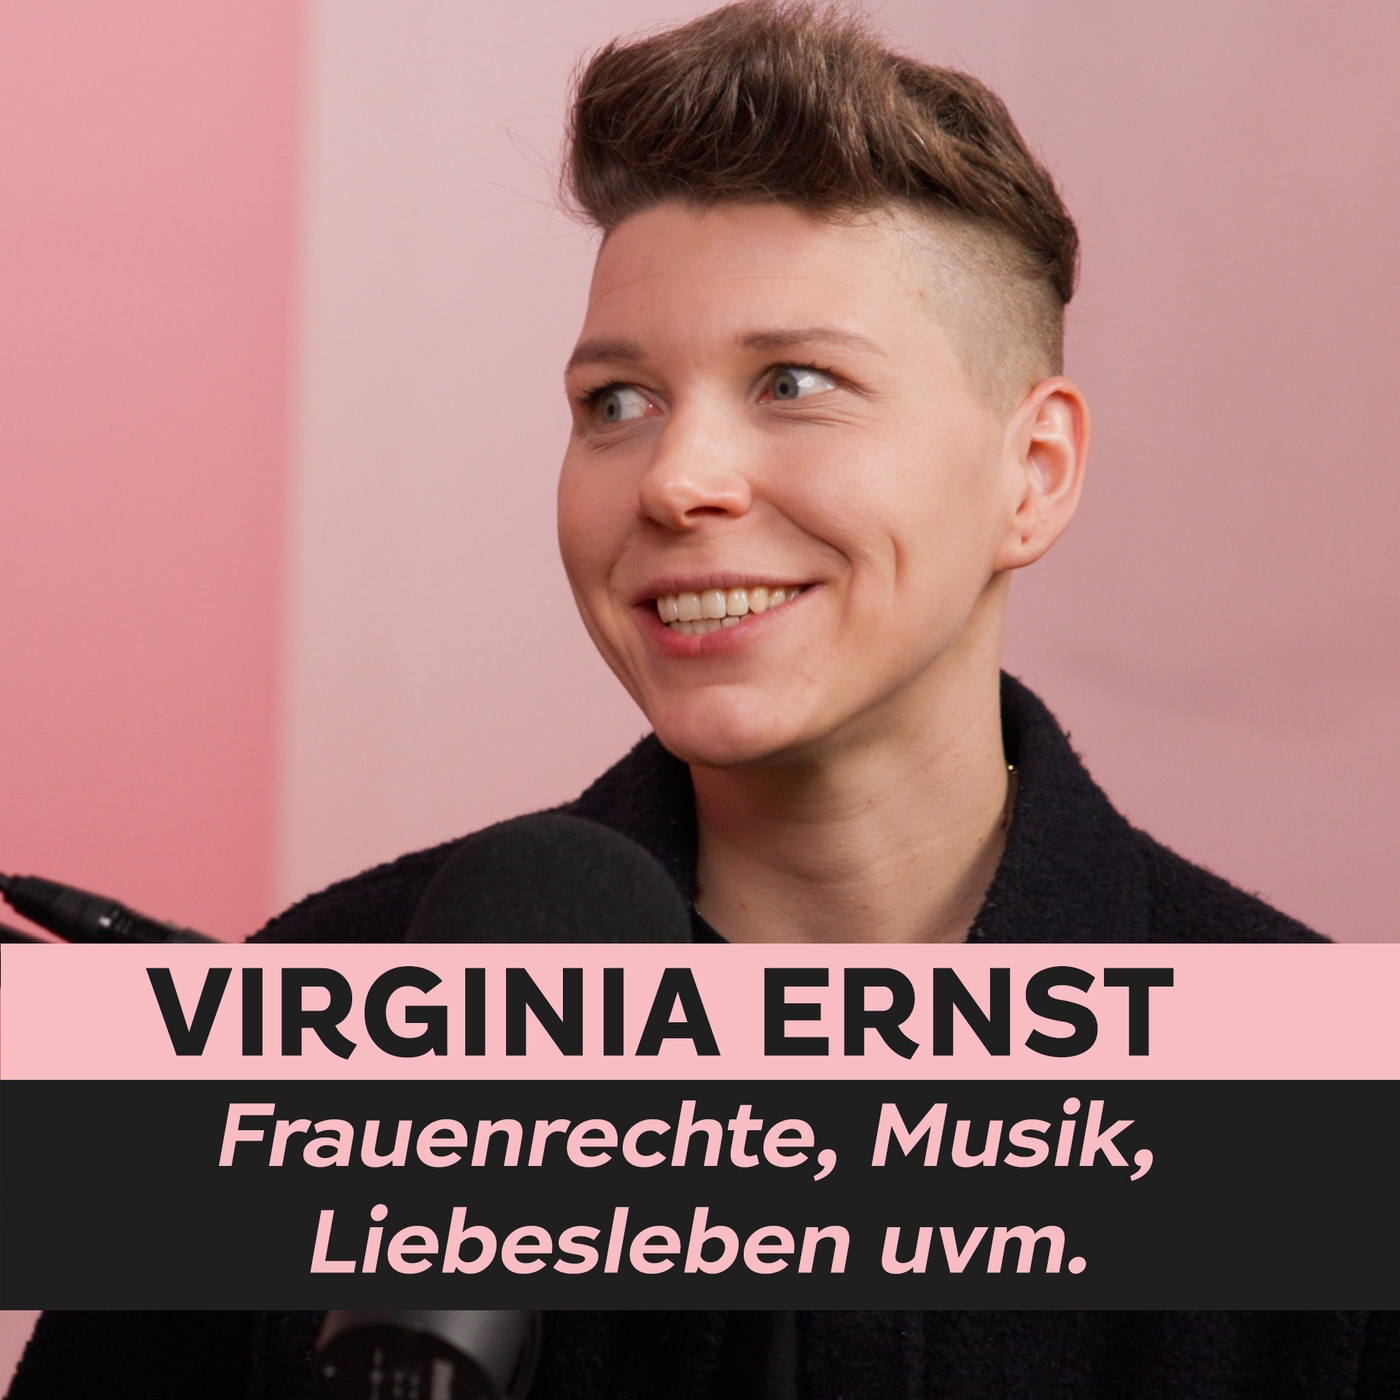 Virginia Ernst über Frauenrechte, Musik, Liebesleben uvm. | EILES PODCAST mit Gert Kunze